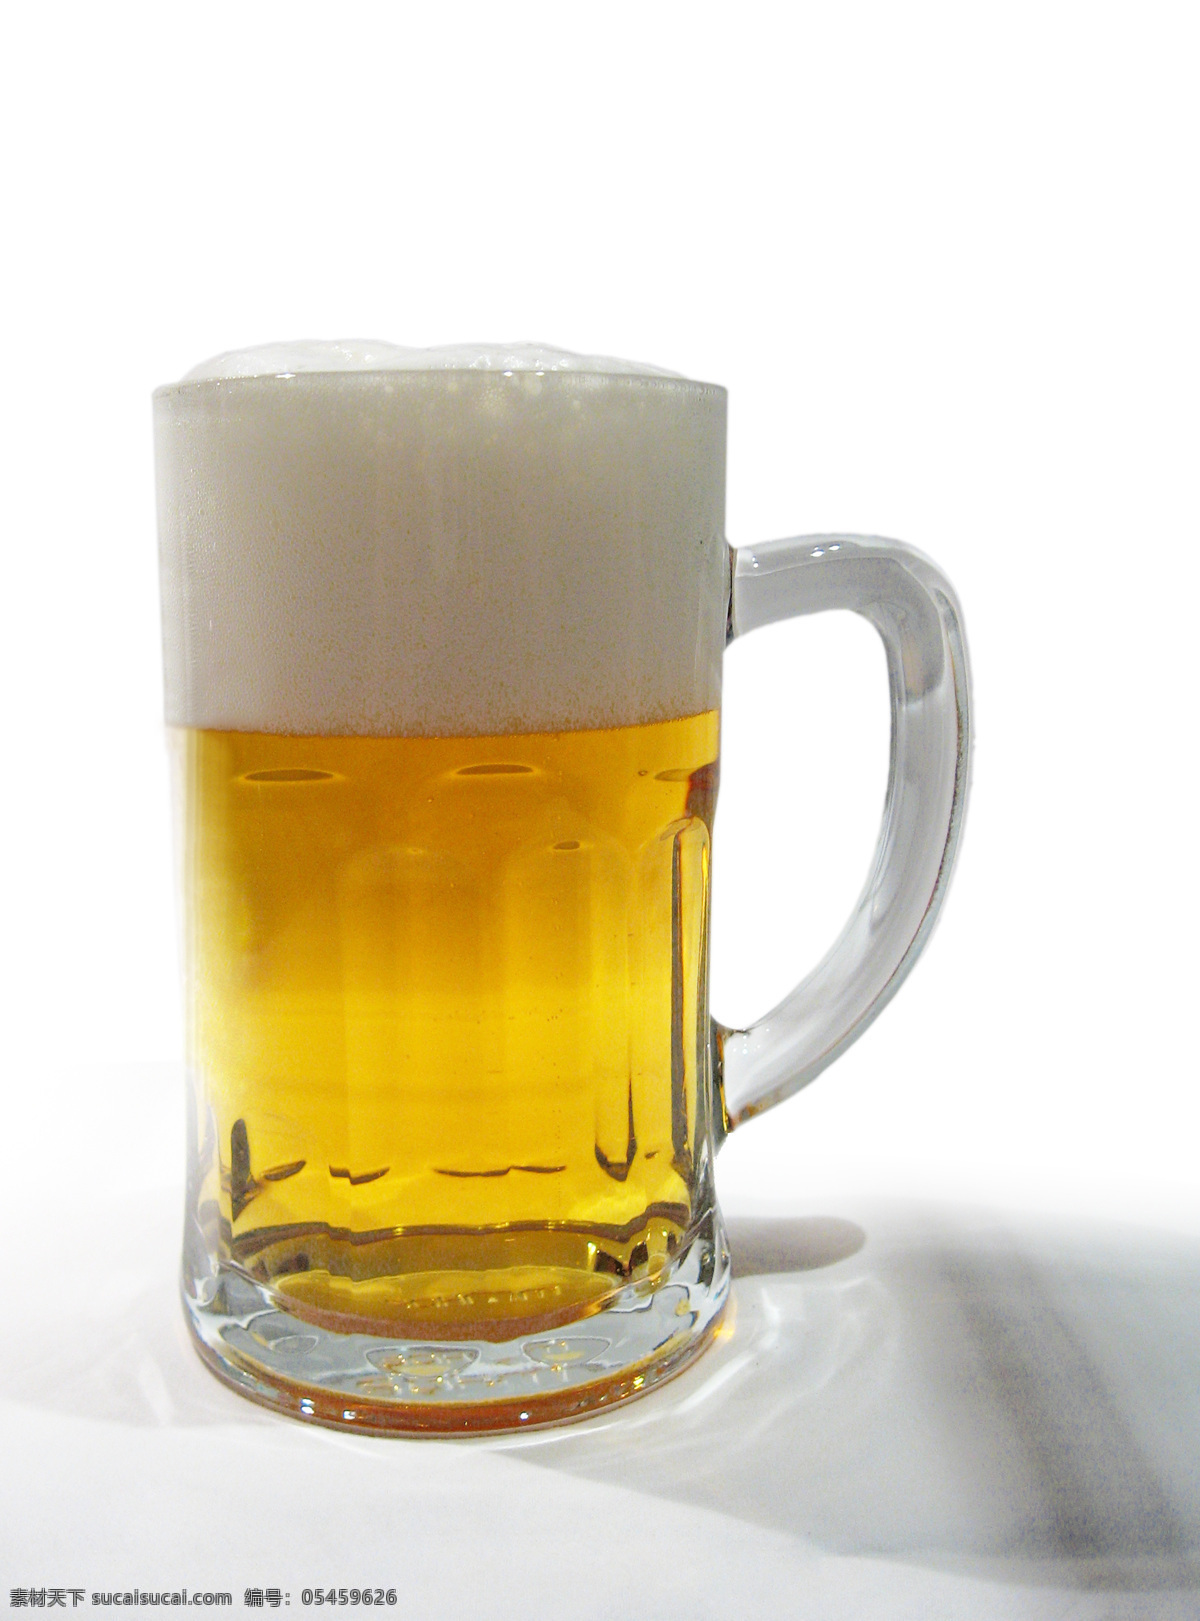 一大杯啤酒 一杯啤酒 啤酒 扎啤 健康 营养 啤酒主题 冷饮 啤酒酒精 饮料 冰冻 夏天 酷暑 饮品 解暑 酒水 餐饮美食 饮料酒水